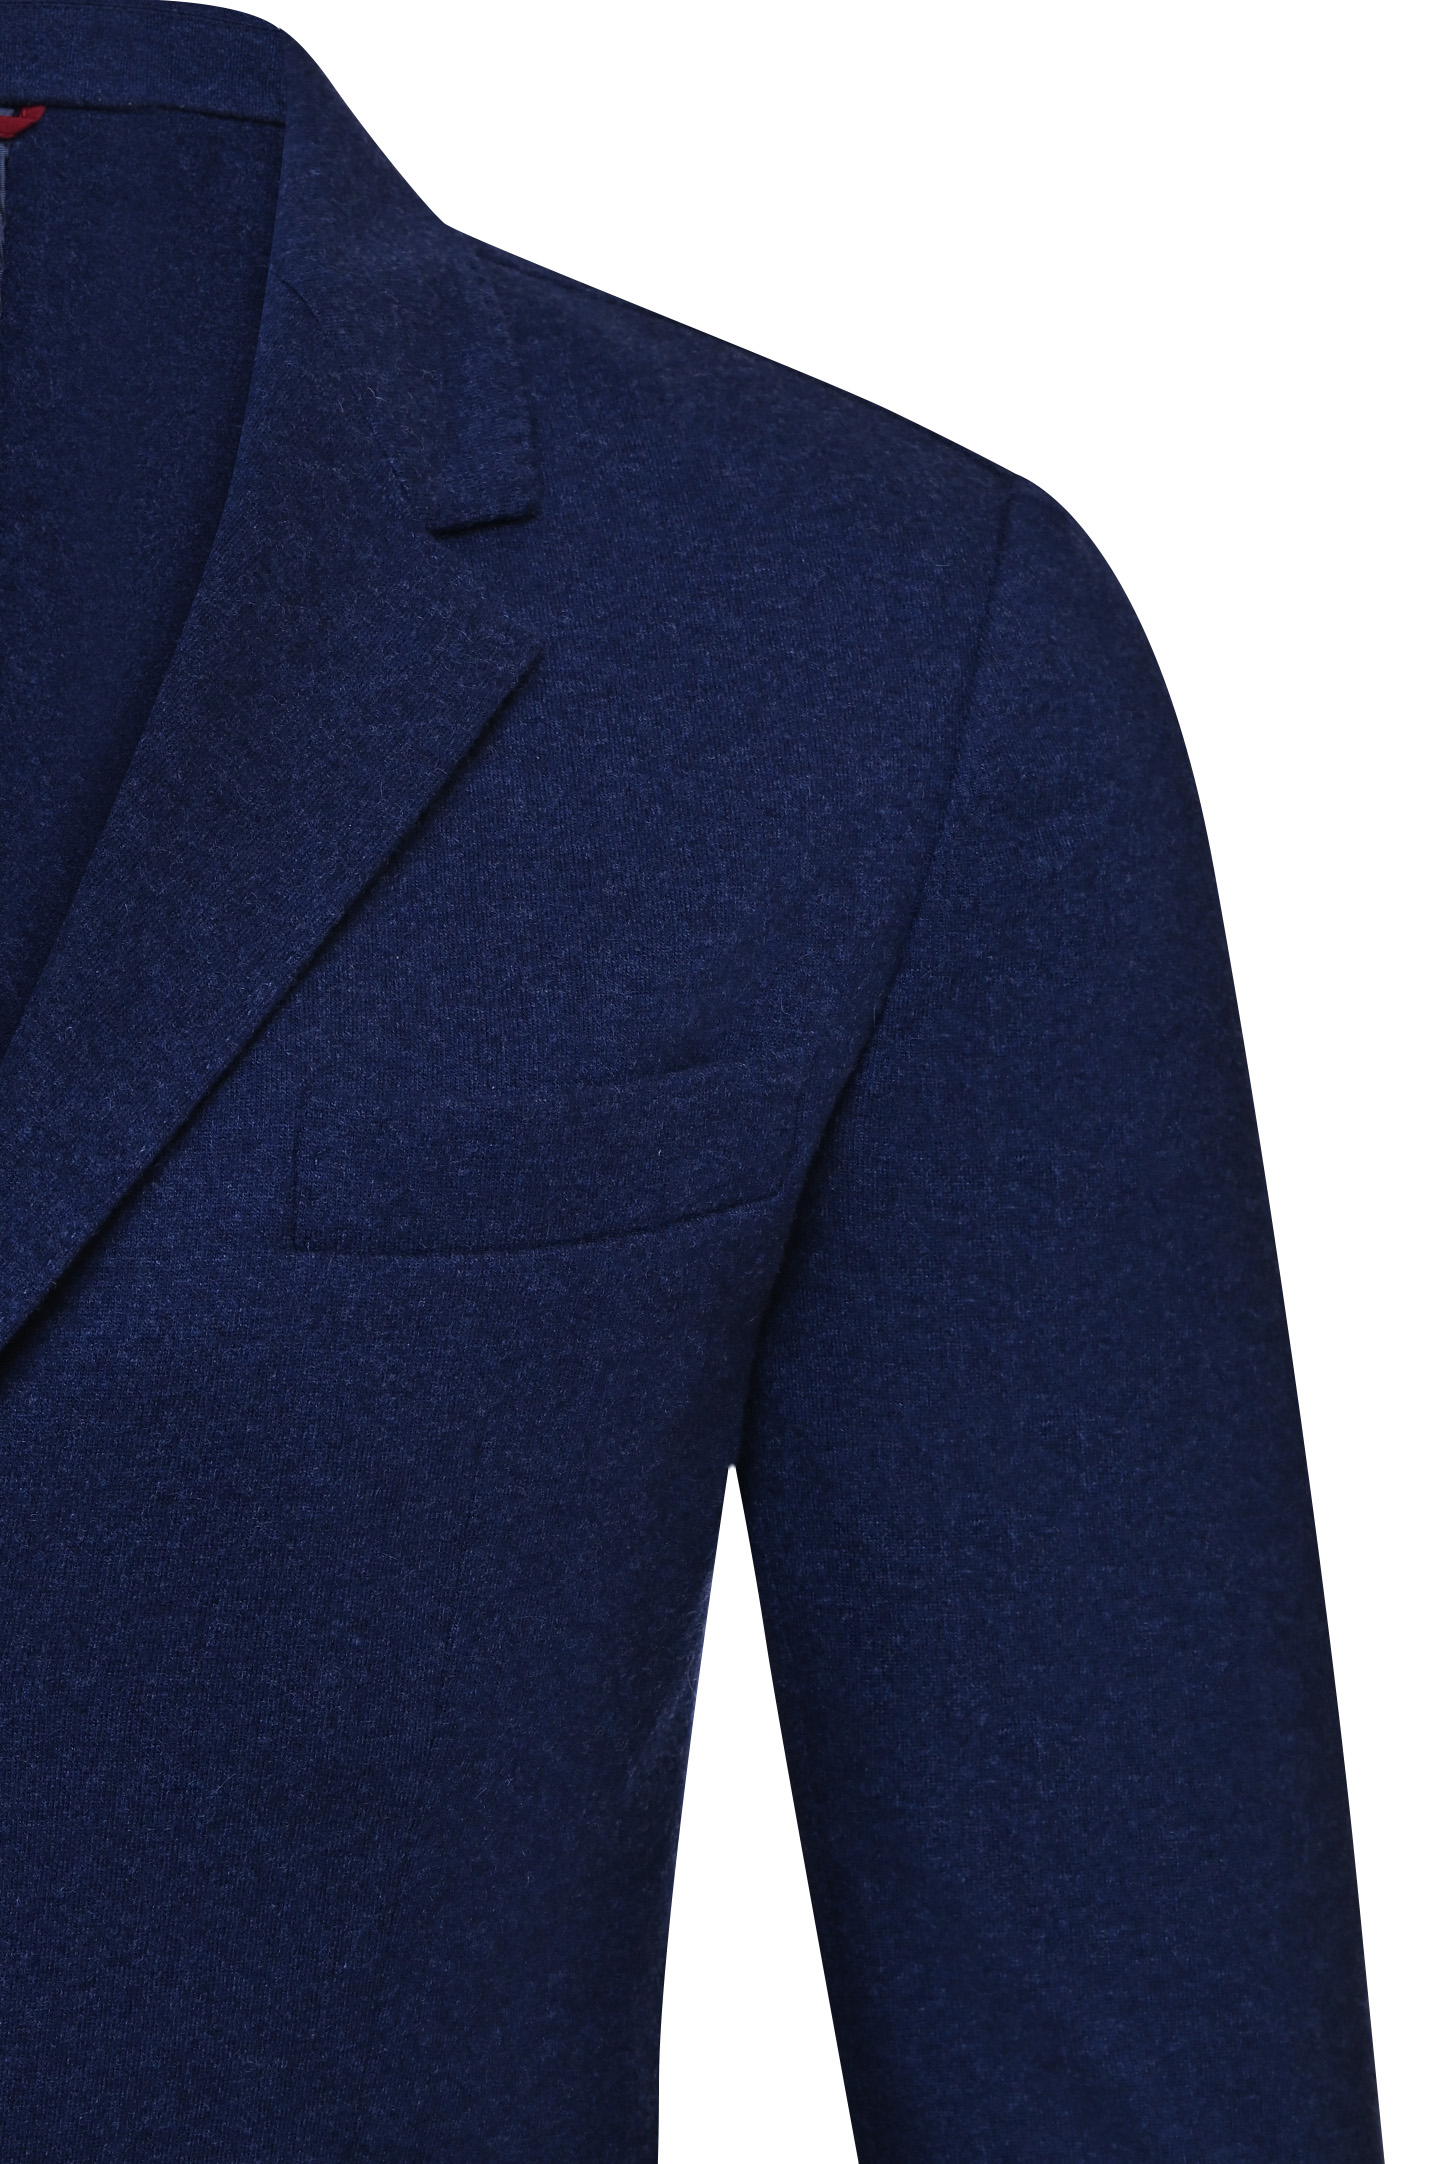 Пиджак BRUNELLO  CUCINELLI ML8968J01, цвет: Синий, Мужской